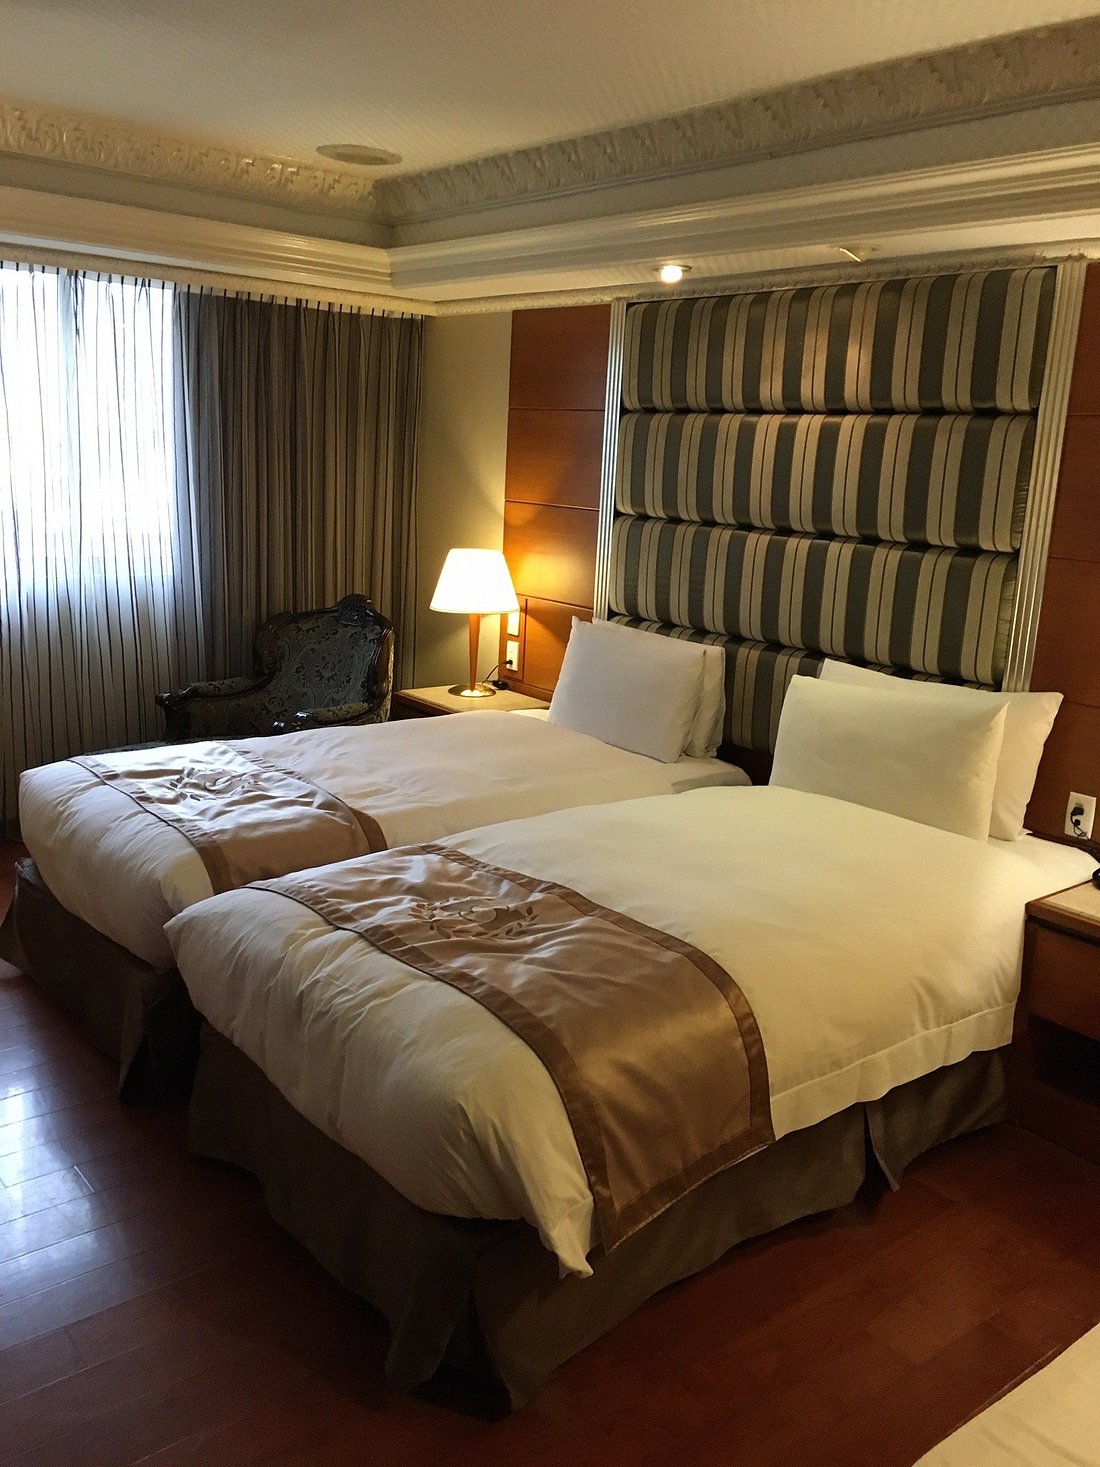 HOPE CITY FUSHING HOTEL - Reviews (Da'an, Taipei)